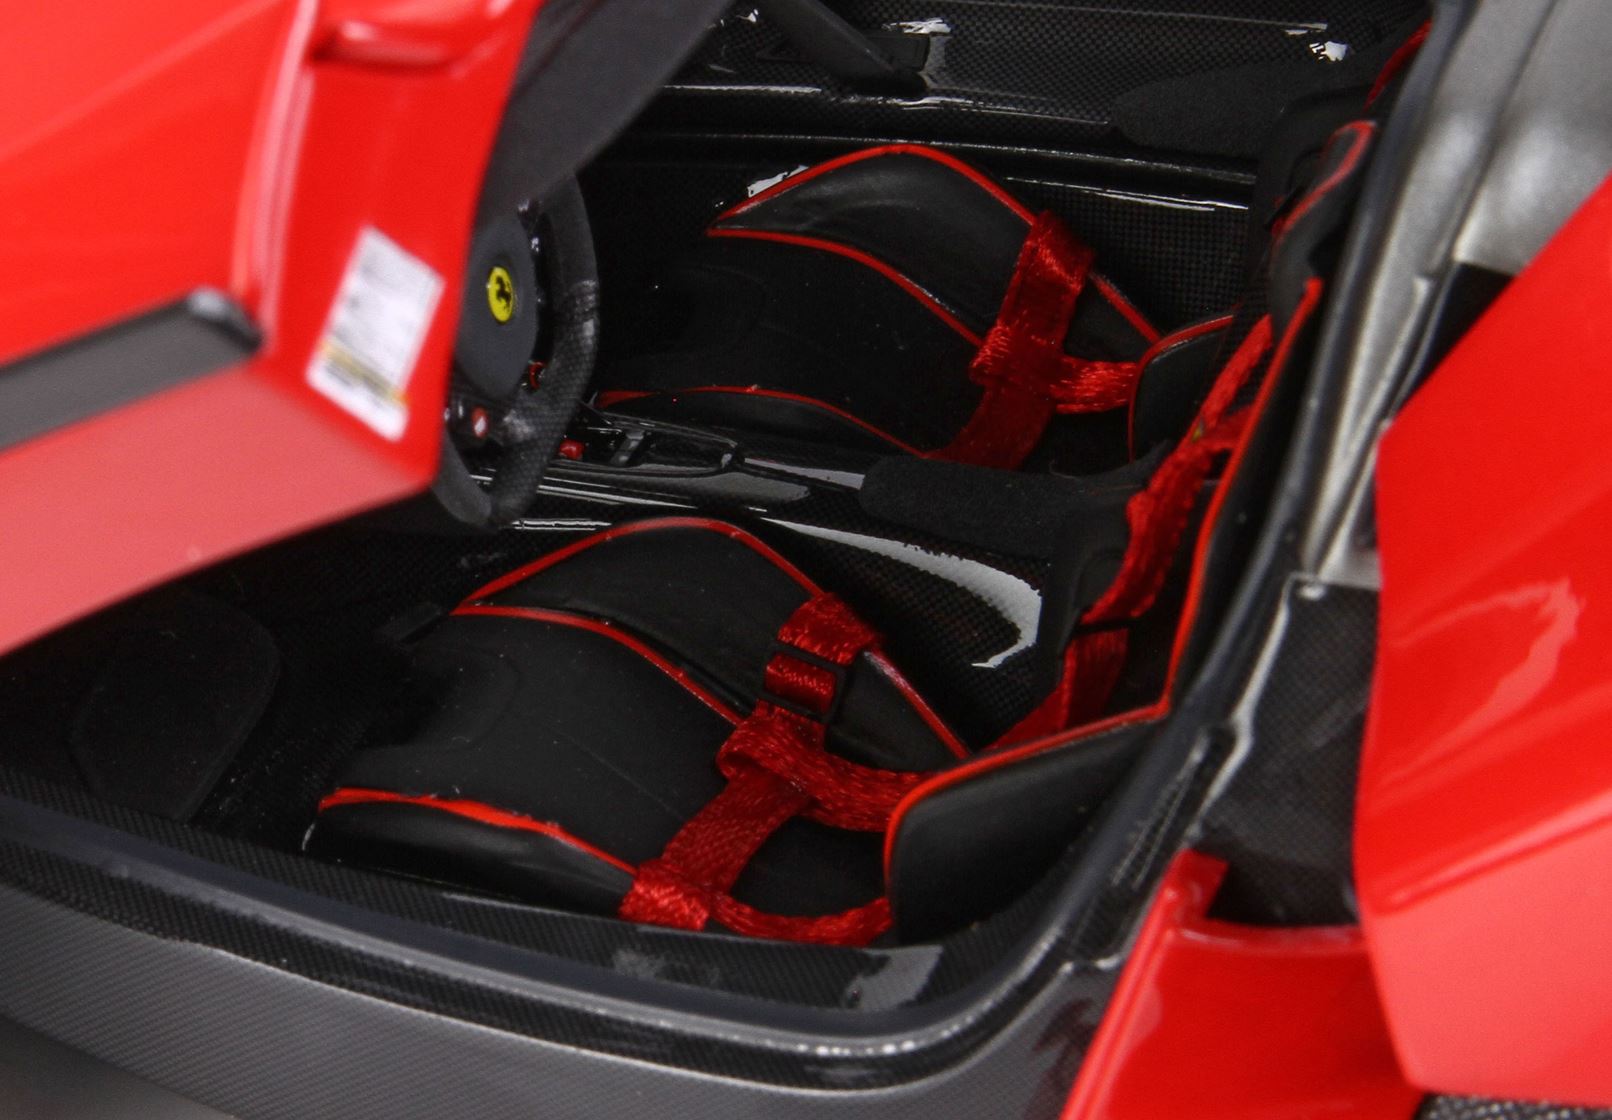 BBR La Ferrari escala 1:18 Diecast Red con techo gris